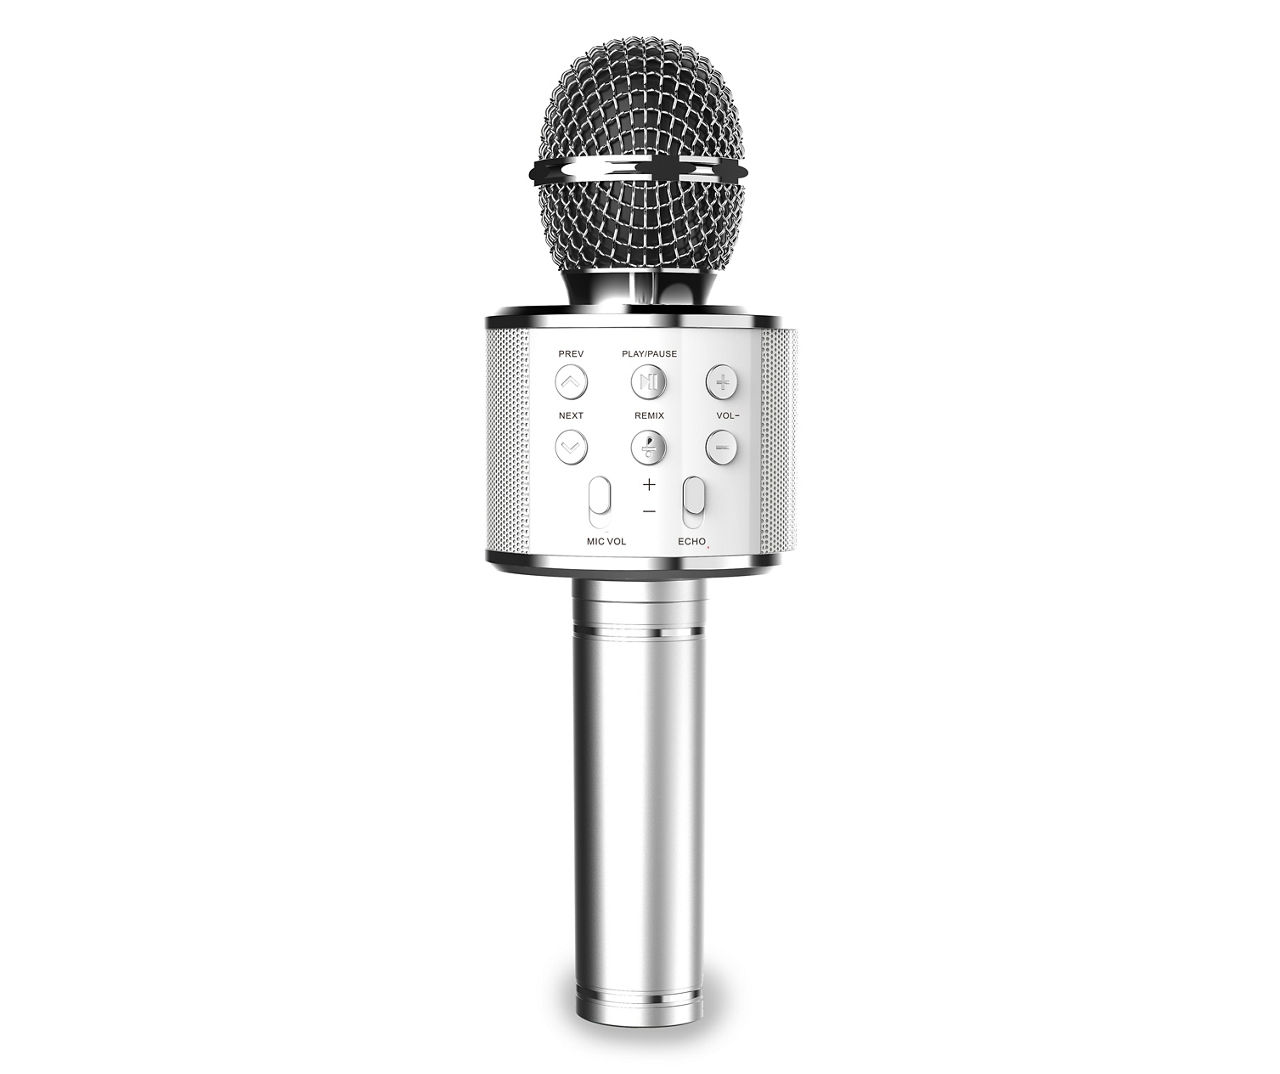 Art + Sound Karaoke Silver Wireless Microphone & Speaker